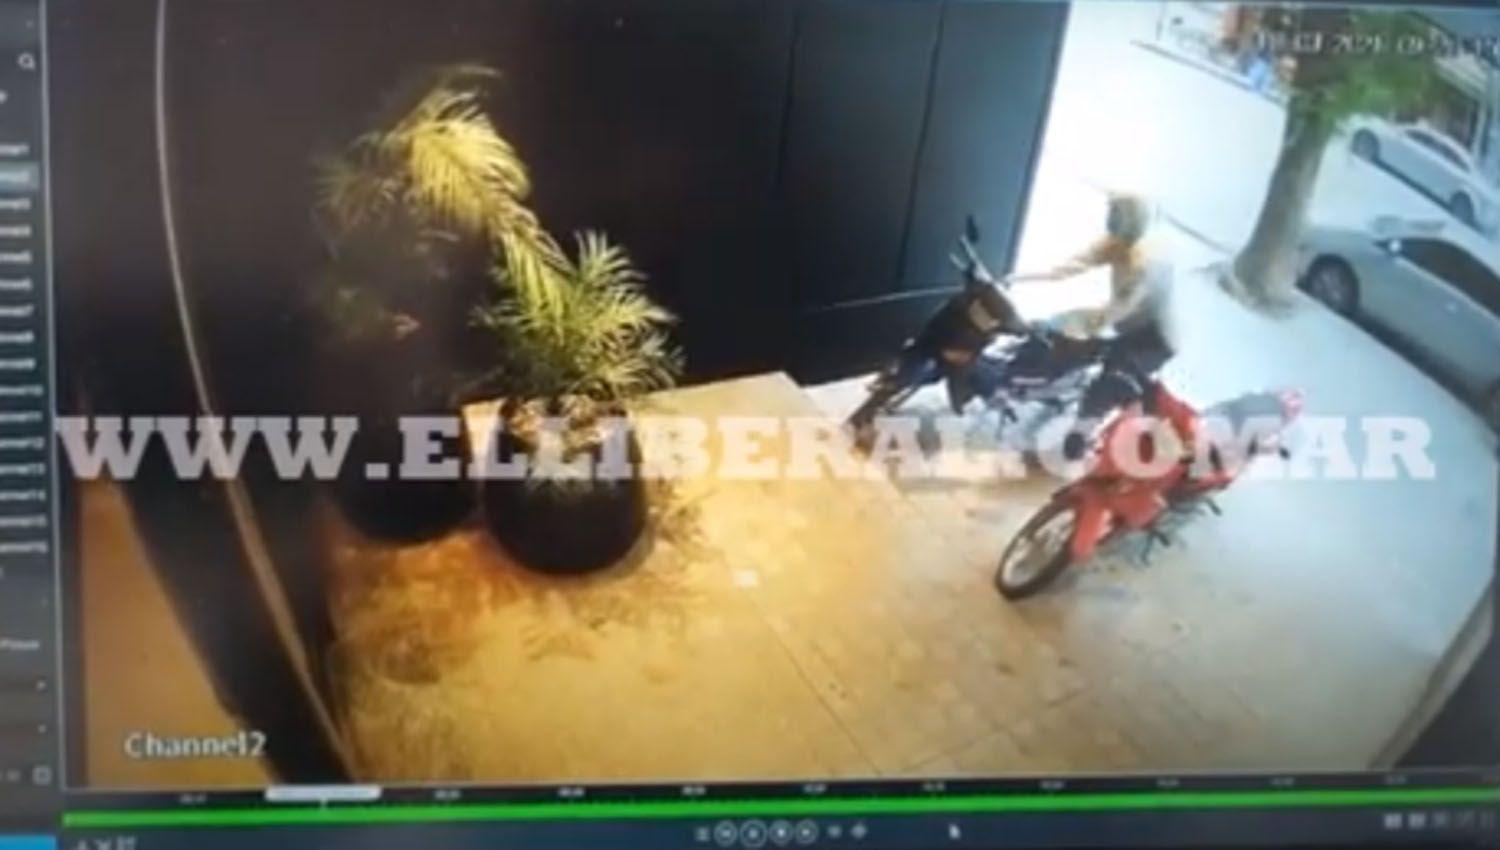 VIDEO  Barrio Centro- En cuestioacuten de segundos un ladroacuten se llevoacute una moto ajena